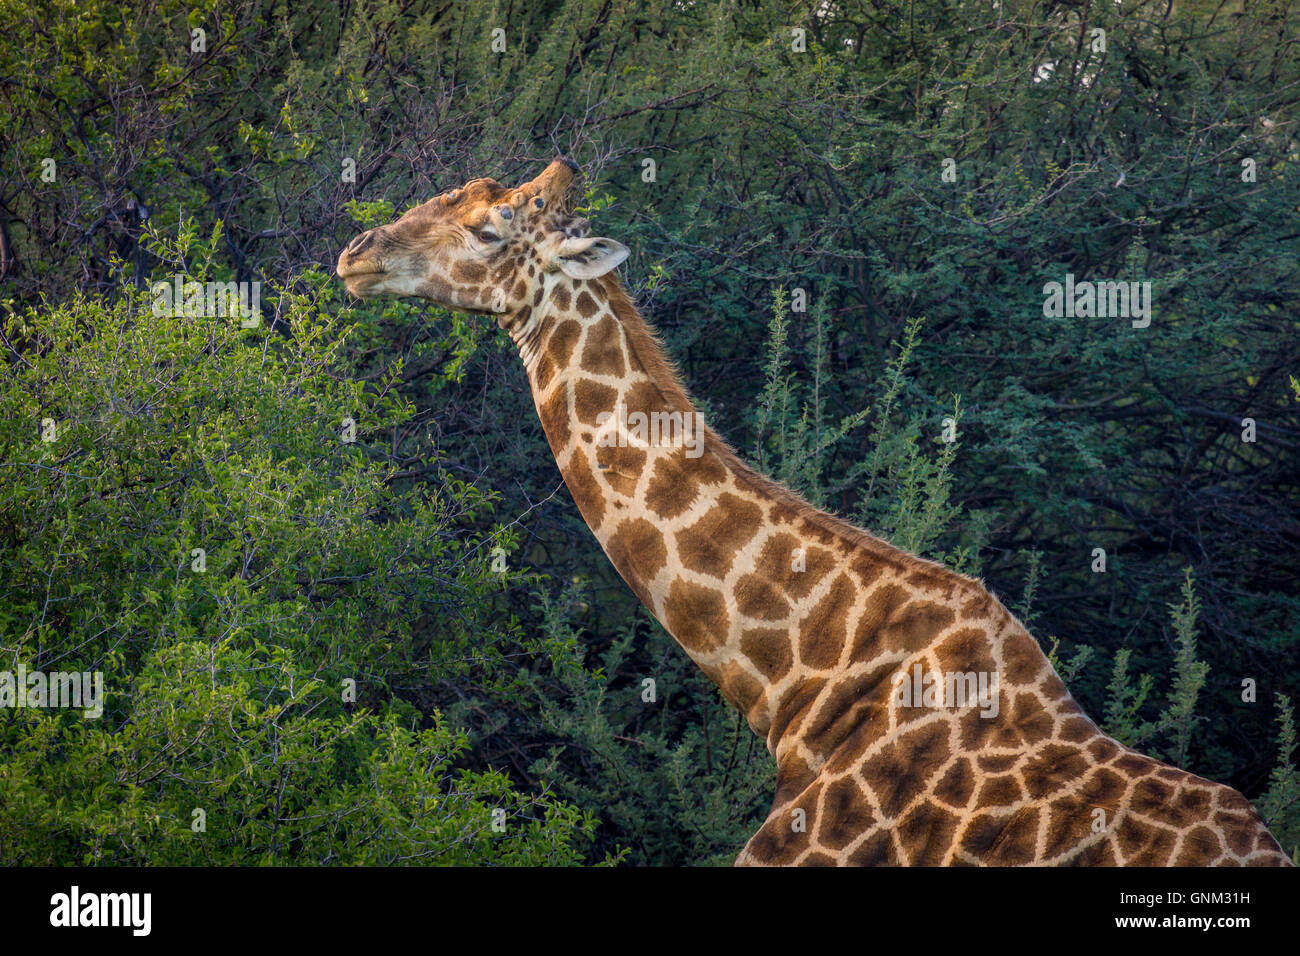 Girafe animaux sur les arbres, Etosha National Park, Namibie, Afrique Banque D'Images